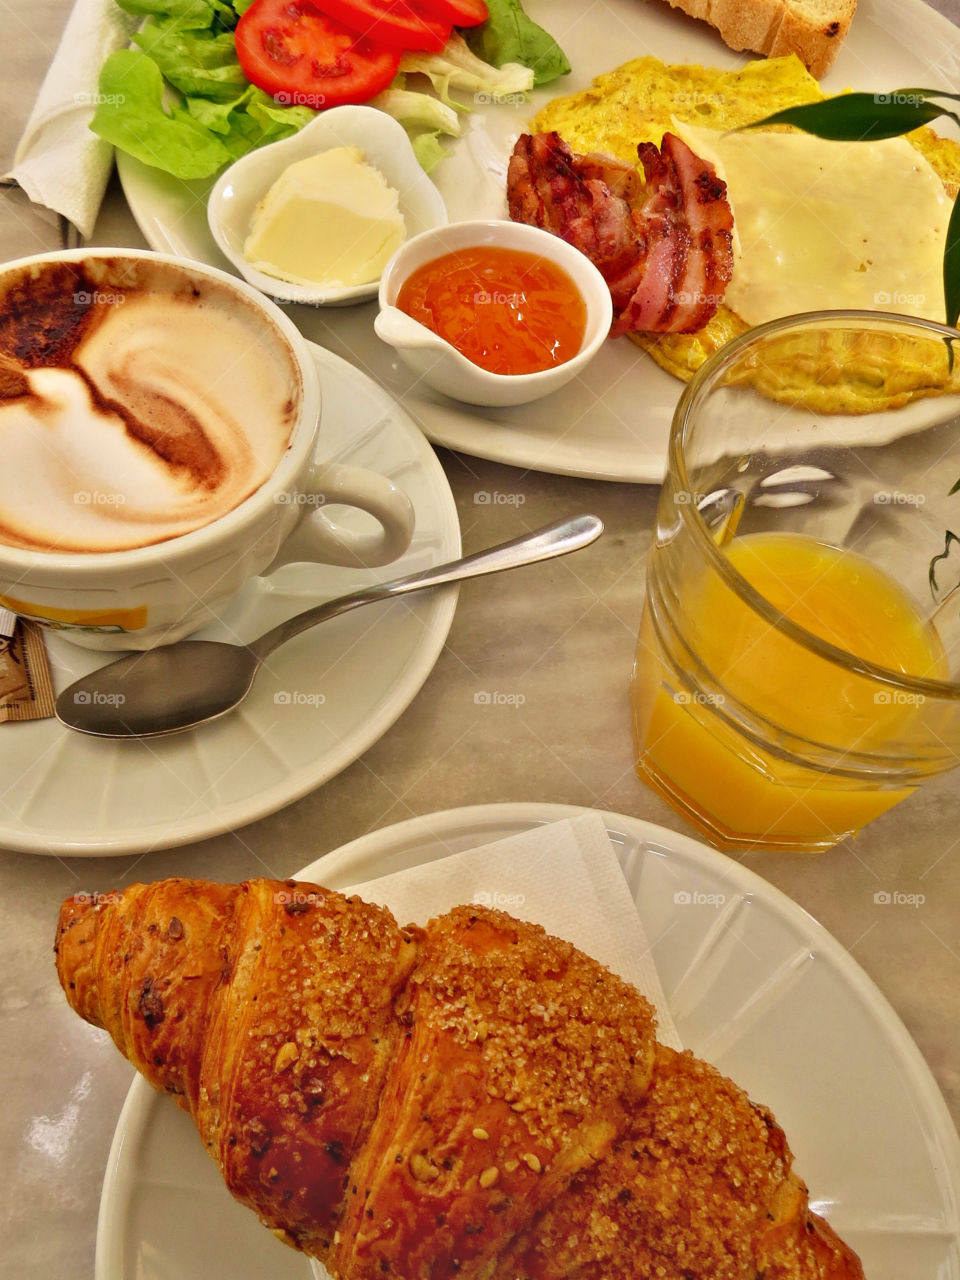 Breakfast in Florence